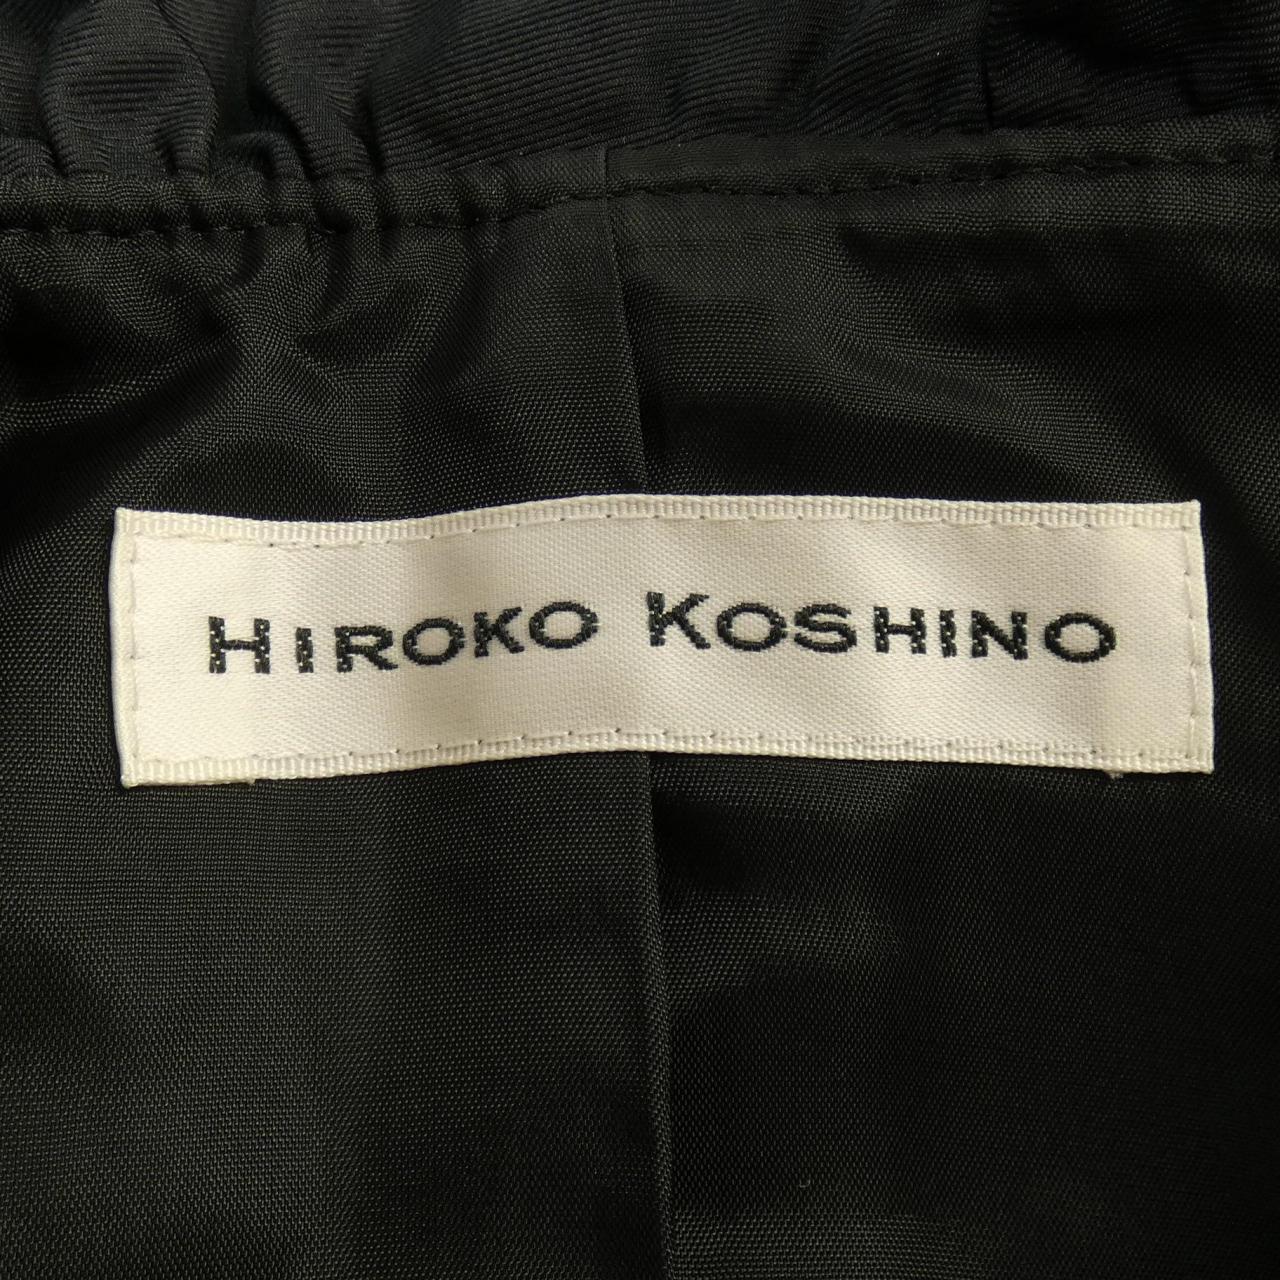 HIROKO KOSHINO上衣